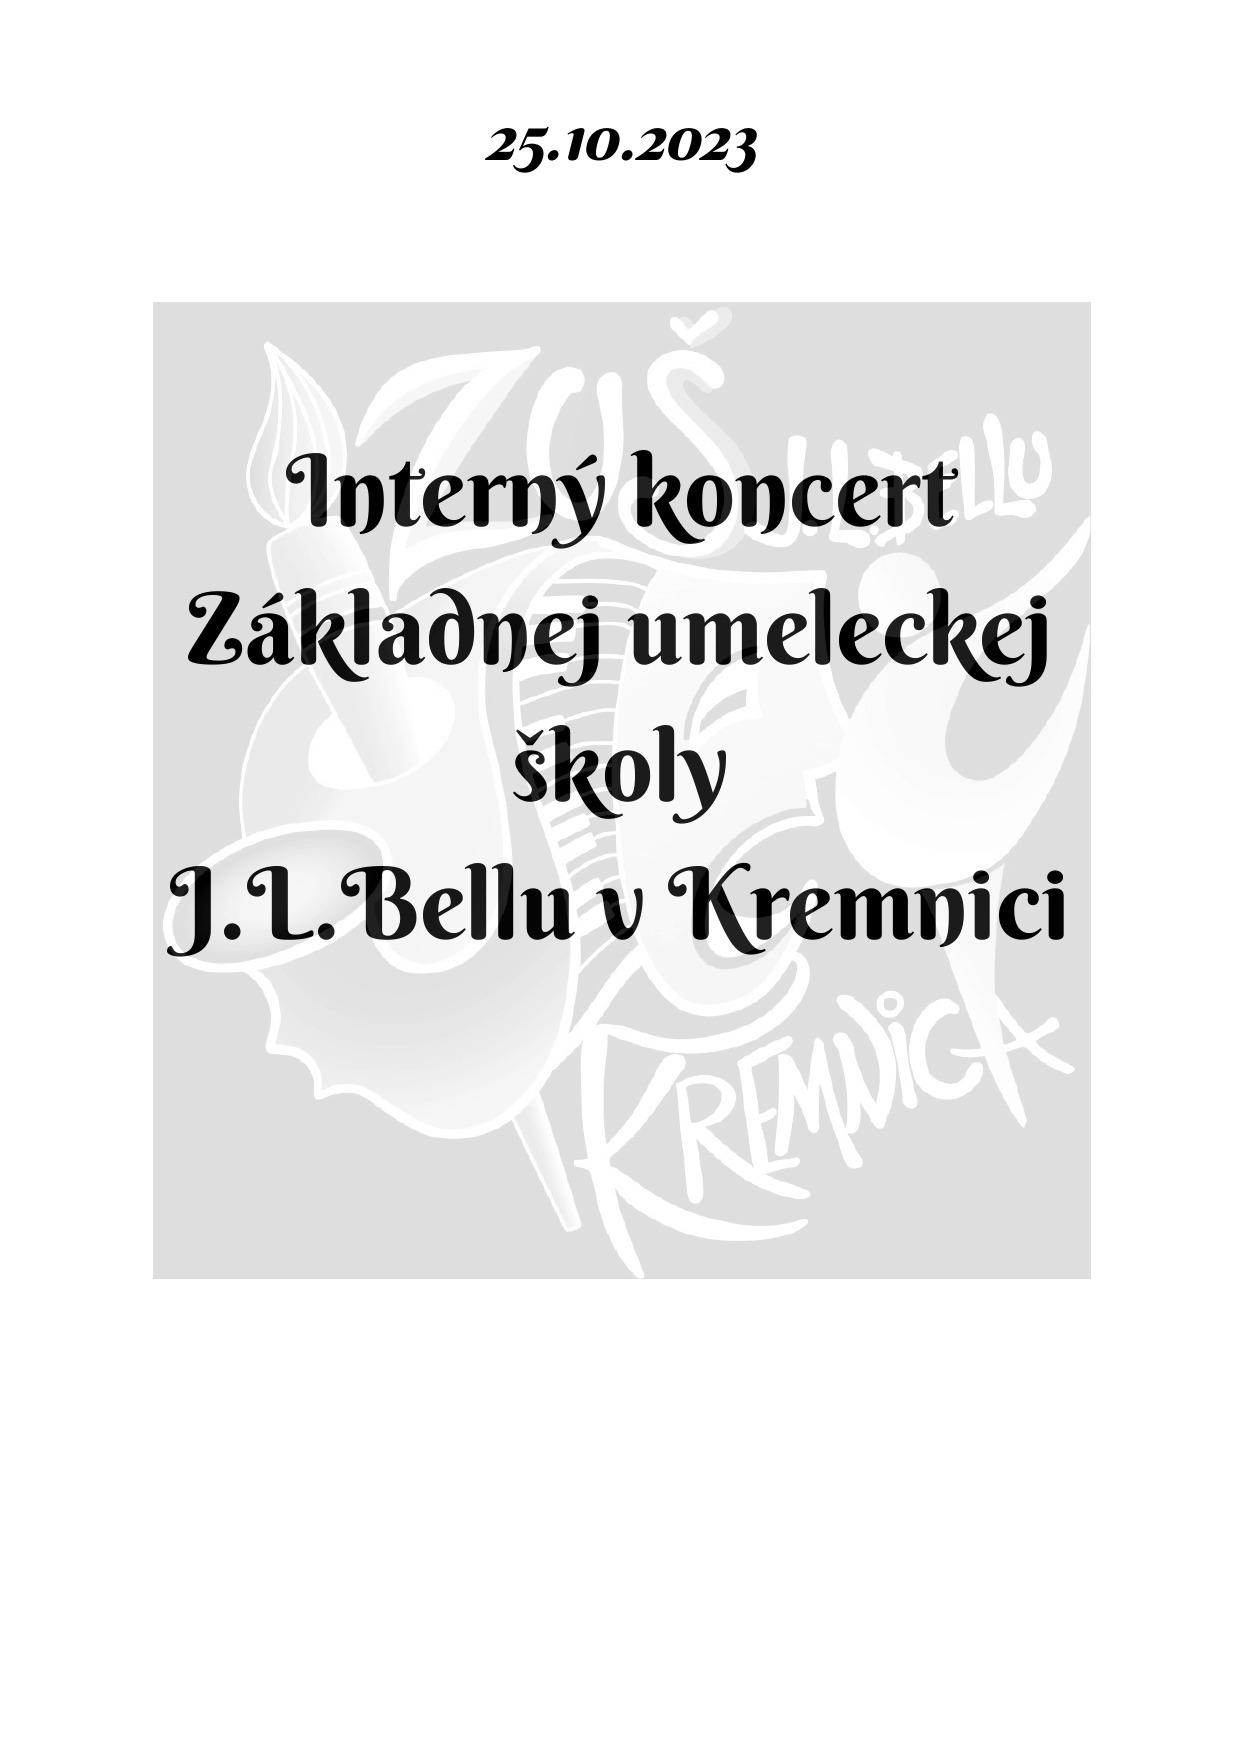 Pozvánka na interný koncert dnes 25.10. o 16:30 v sále ZUŠ, alebo online - Obrázok 1